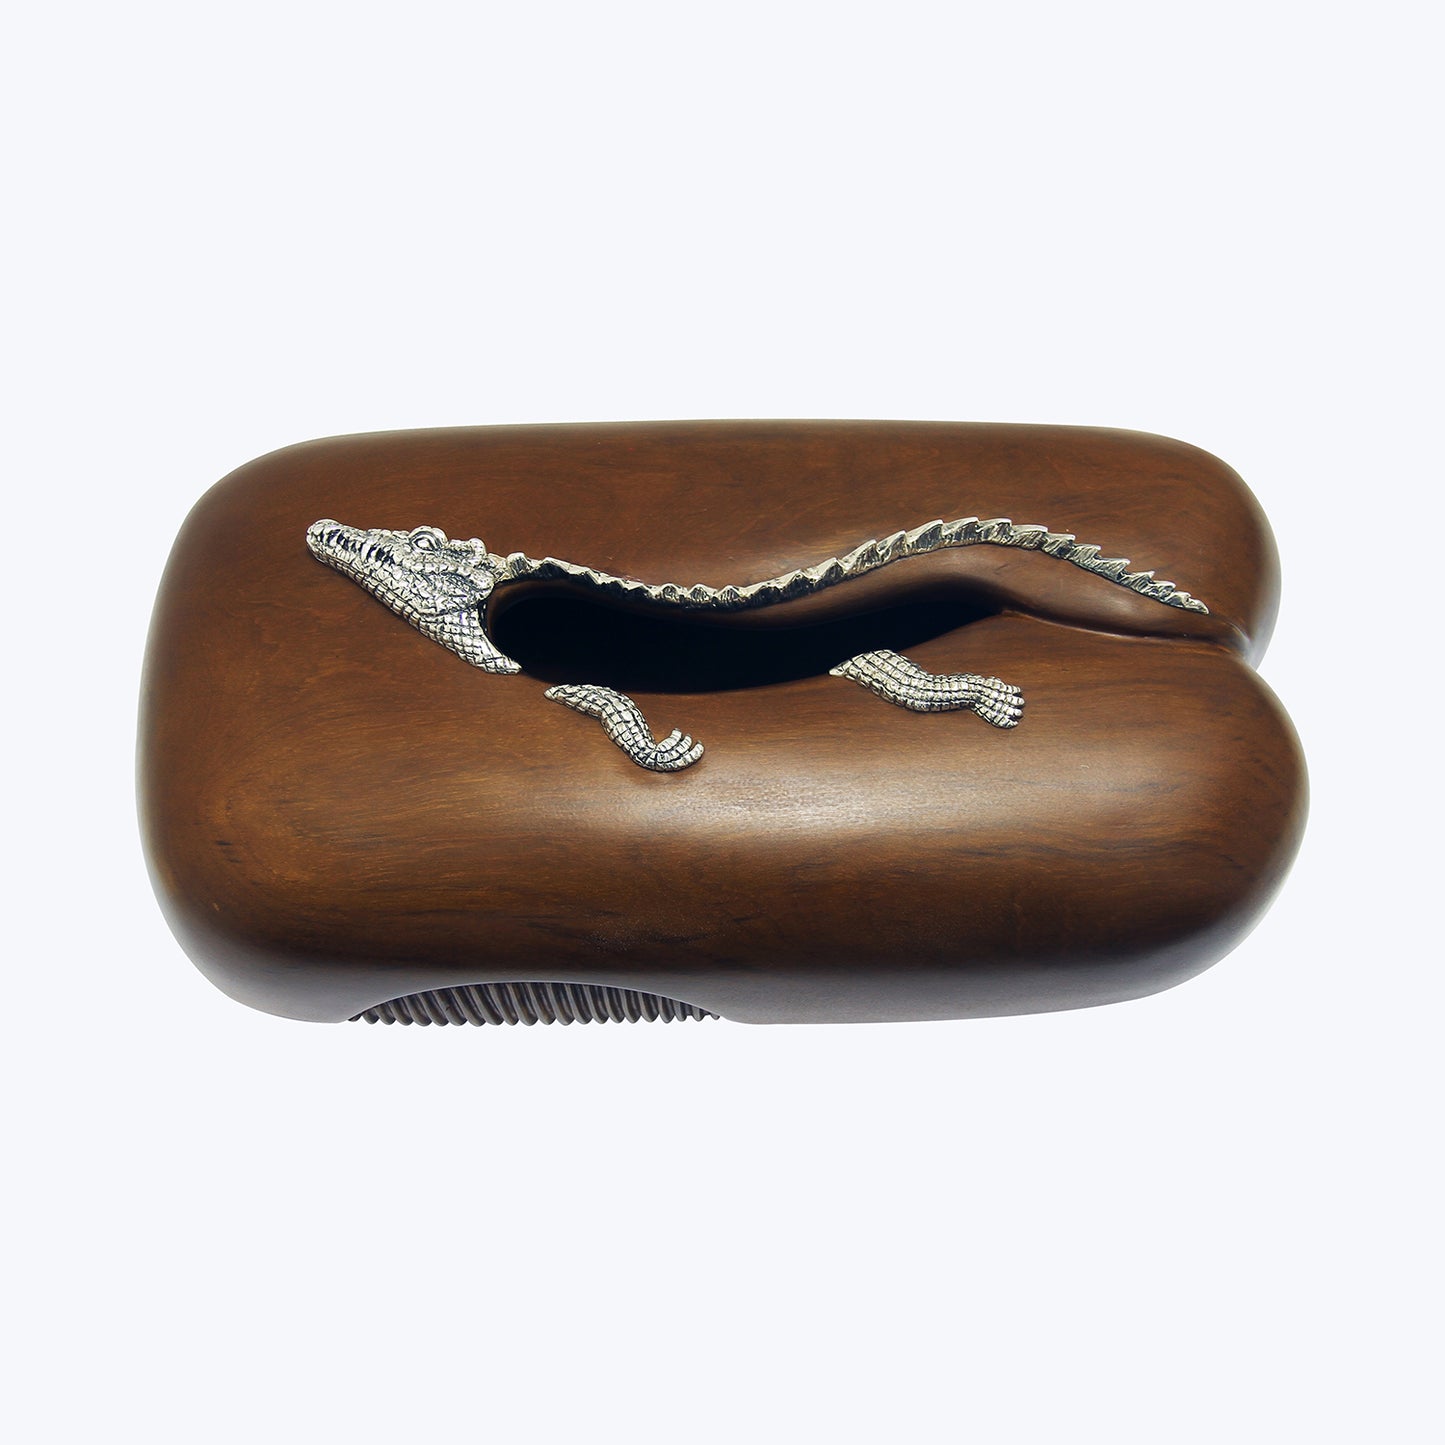 Tissue Box with Silver Crocodile